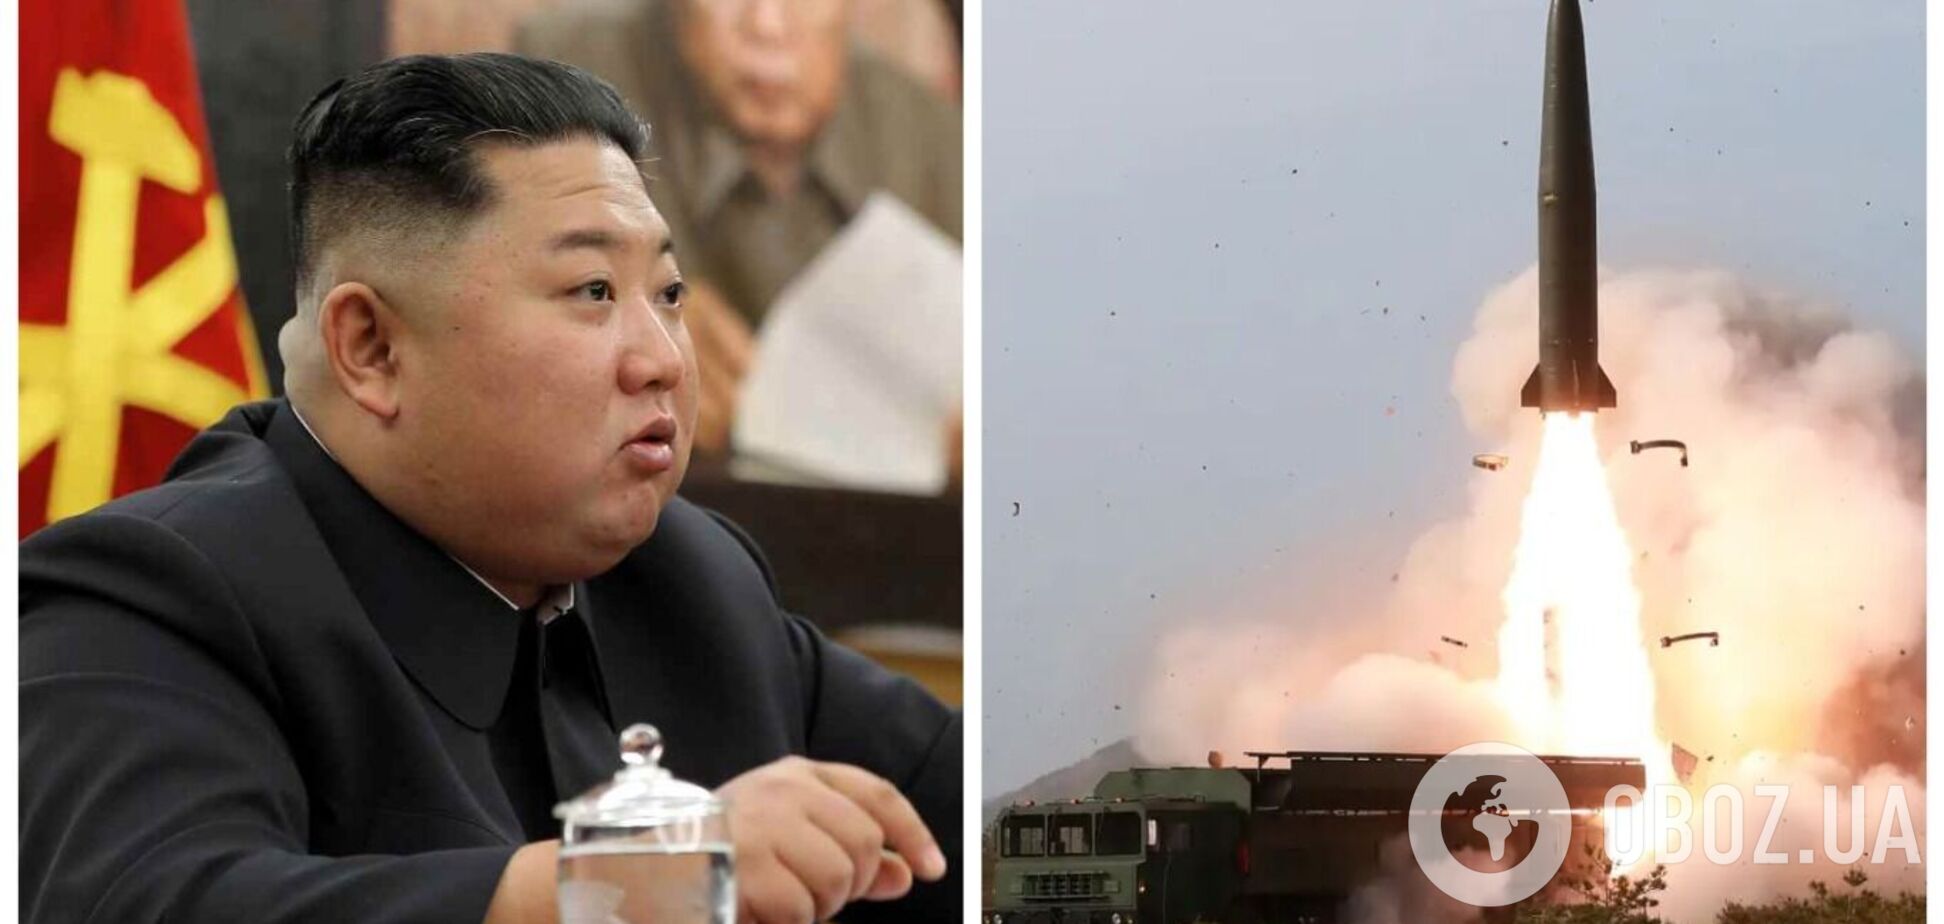 КНДР имитировала тактическую ядерную атаку, выпустив крылатые ракеты с фальшивыми боеголовками – СМИ